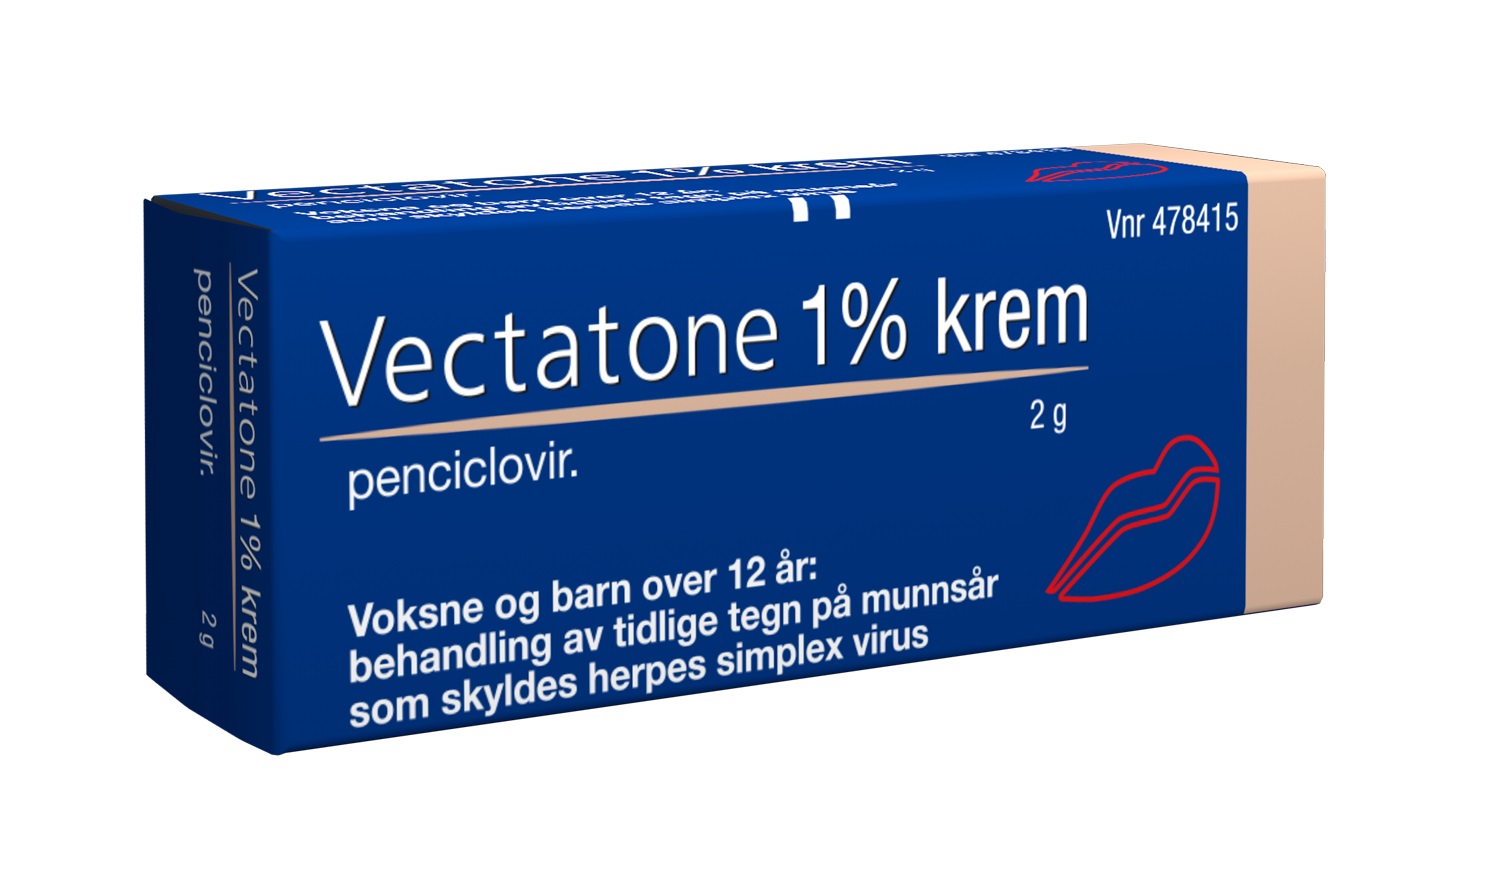 Vectatone Krem 1%, 2 g.